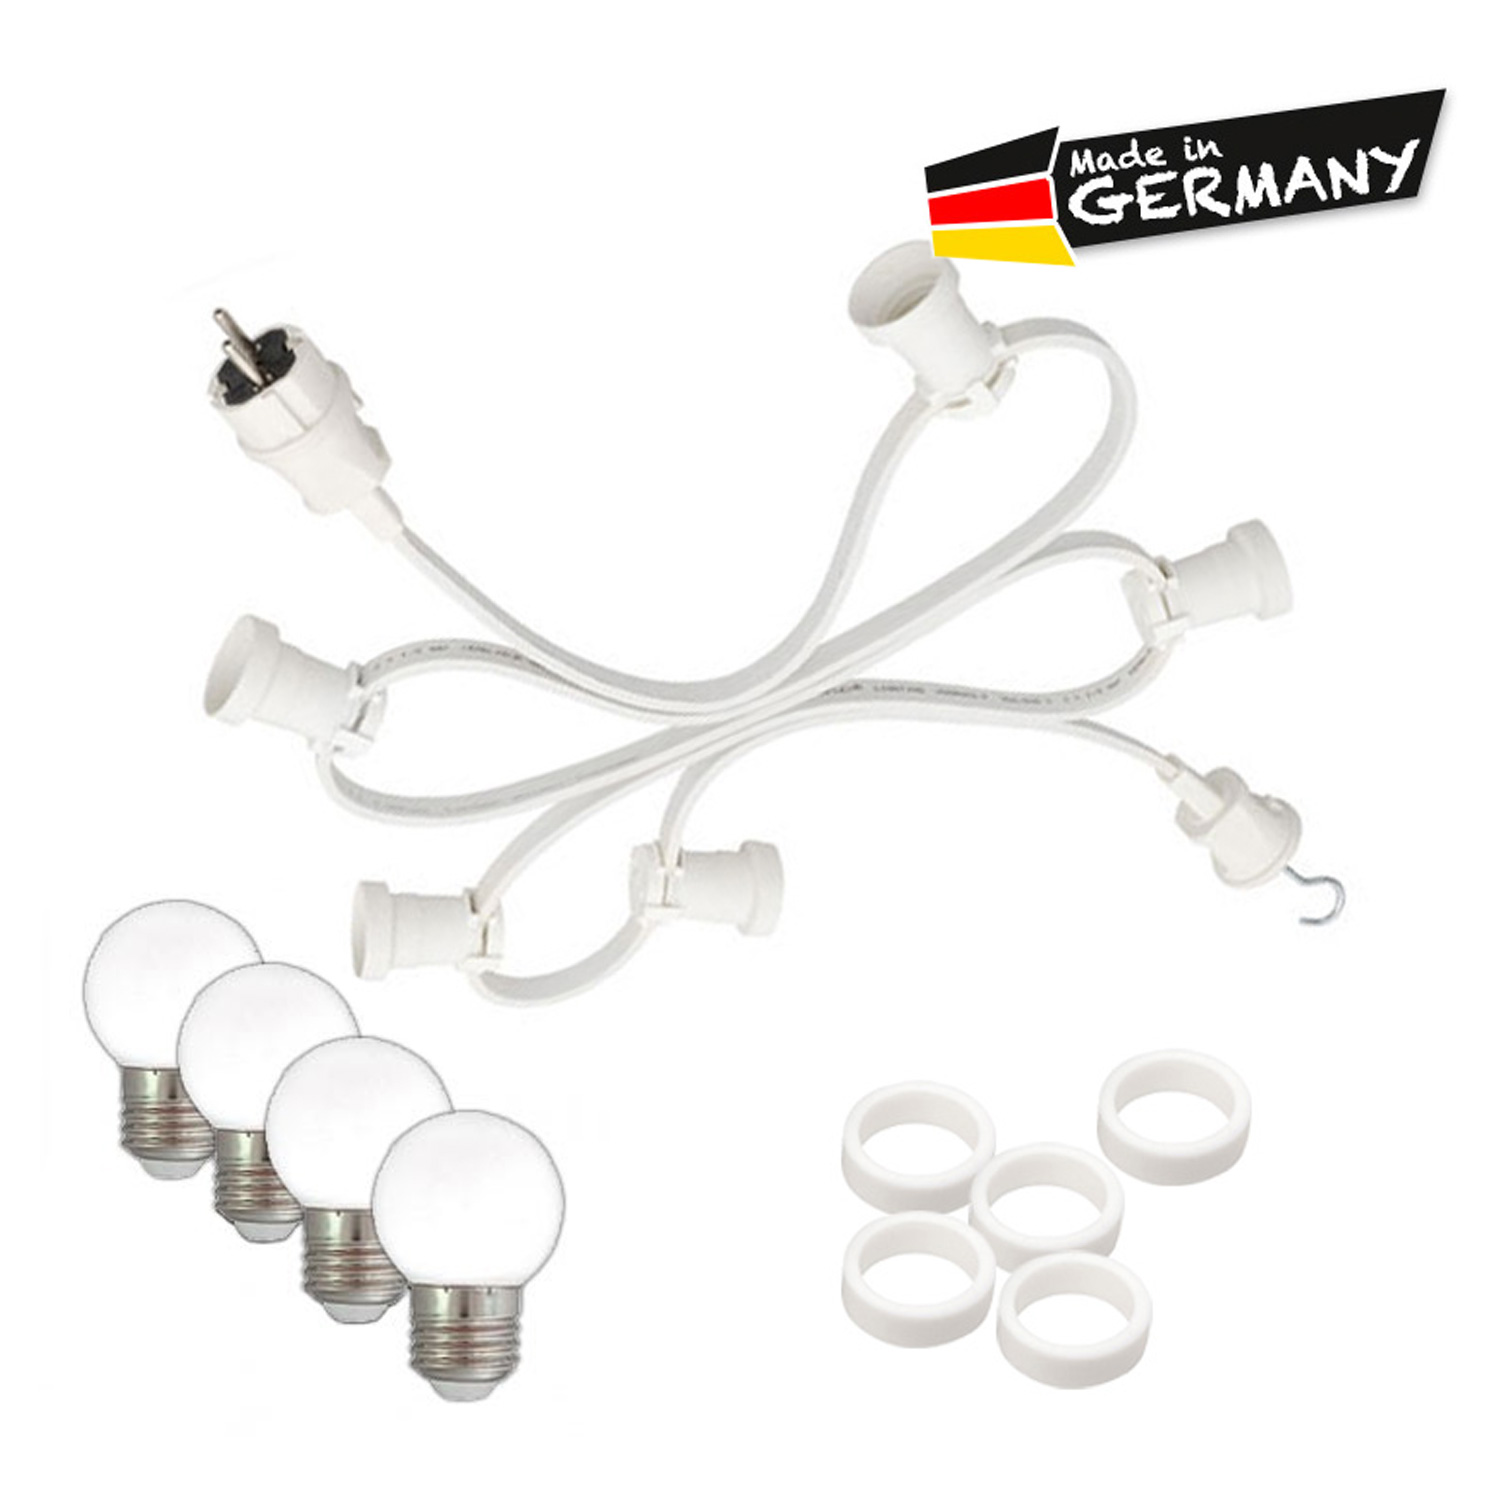 Illu-/Partylichterkette 10m - Außenlichterkette - Made in Germany - 30 x warmweiße LED Kugellampen